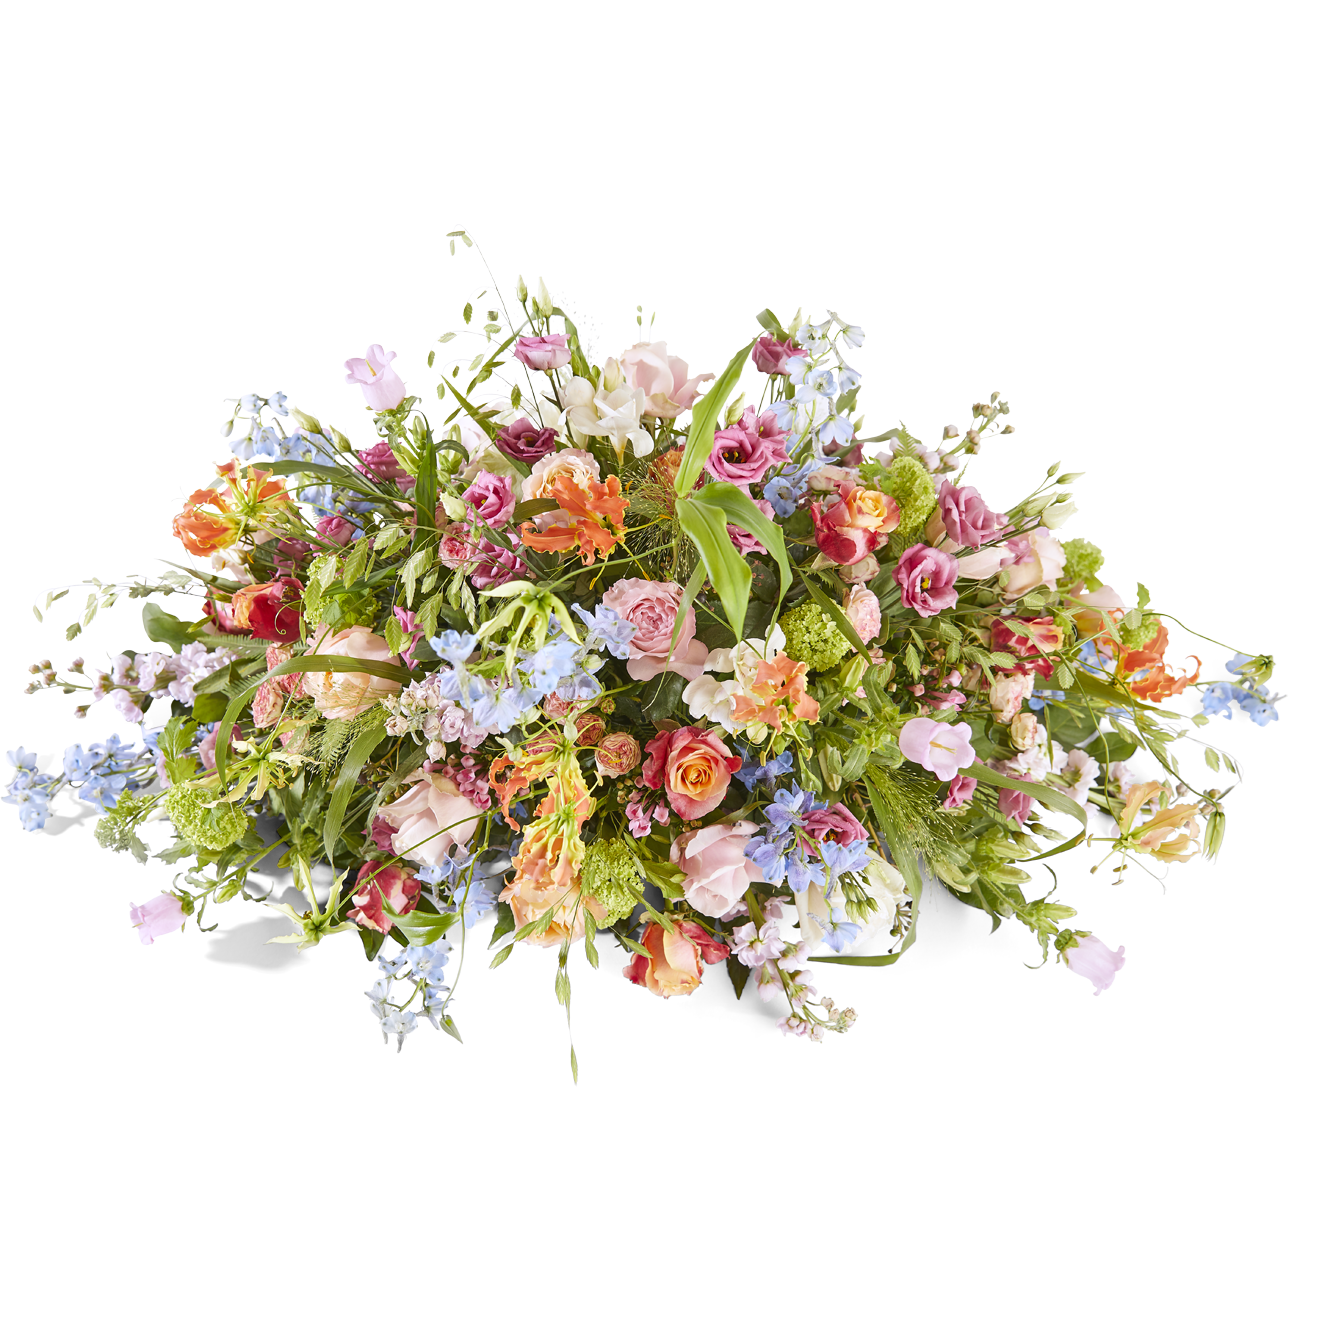 Funeral - Flower splendor